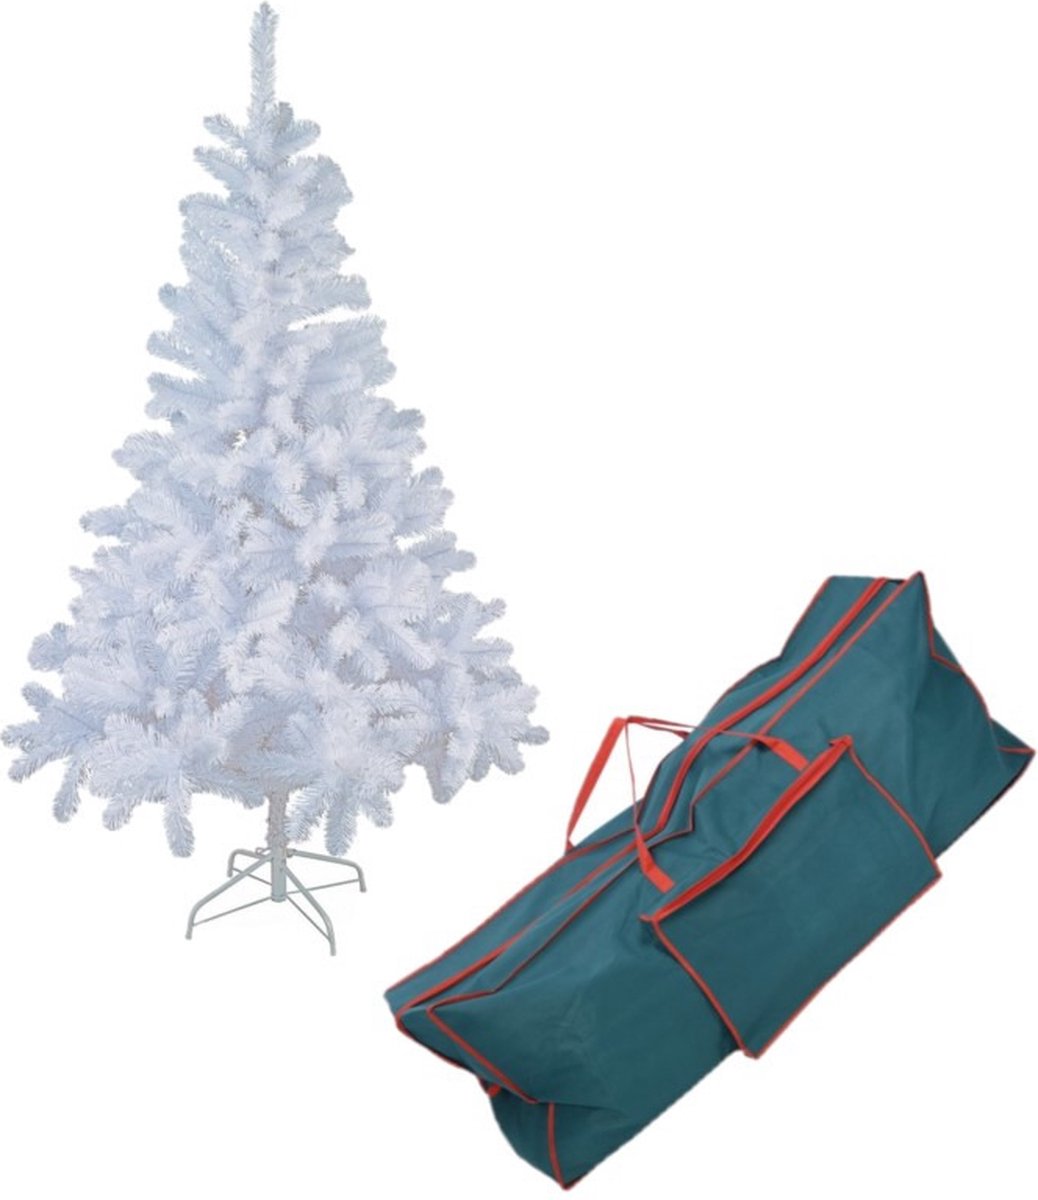 Witte kunst kerstboom/kunstboom 150 cm inclusief opbergzak - Kunstbomen/kunst kerstbomen